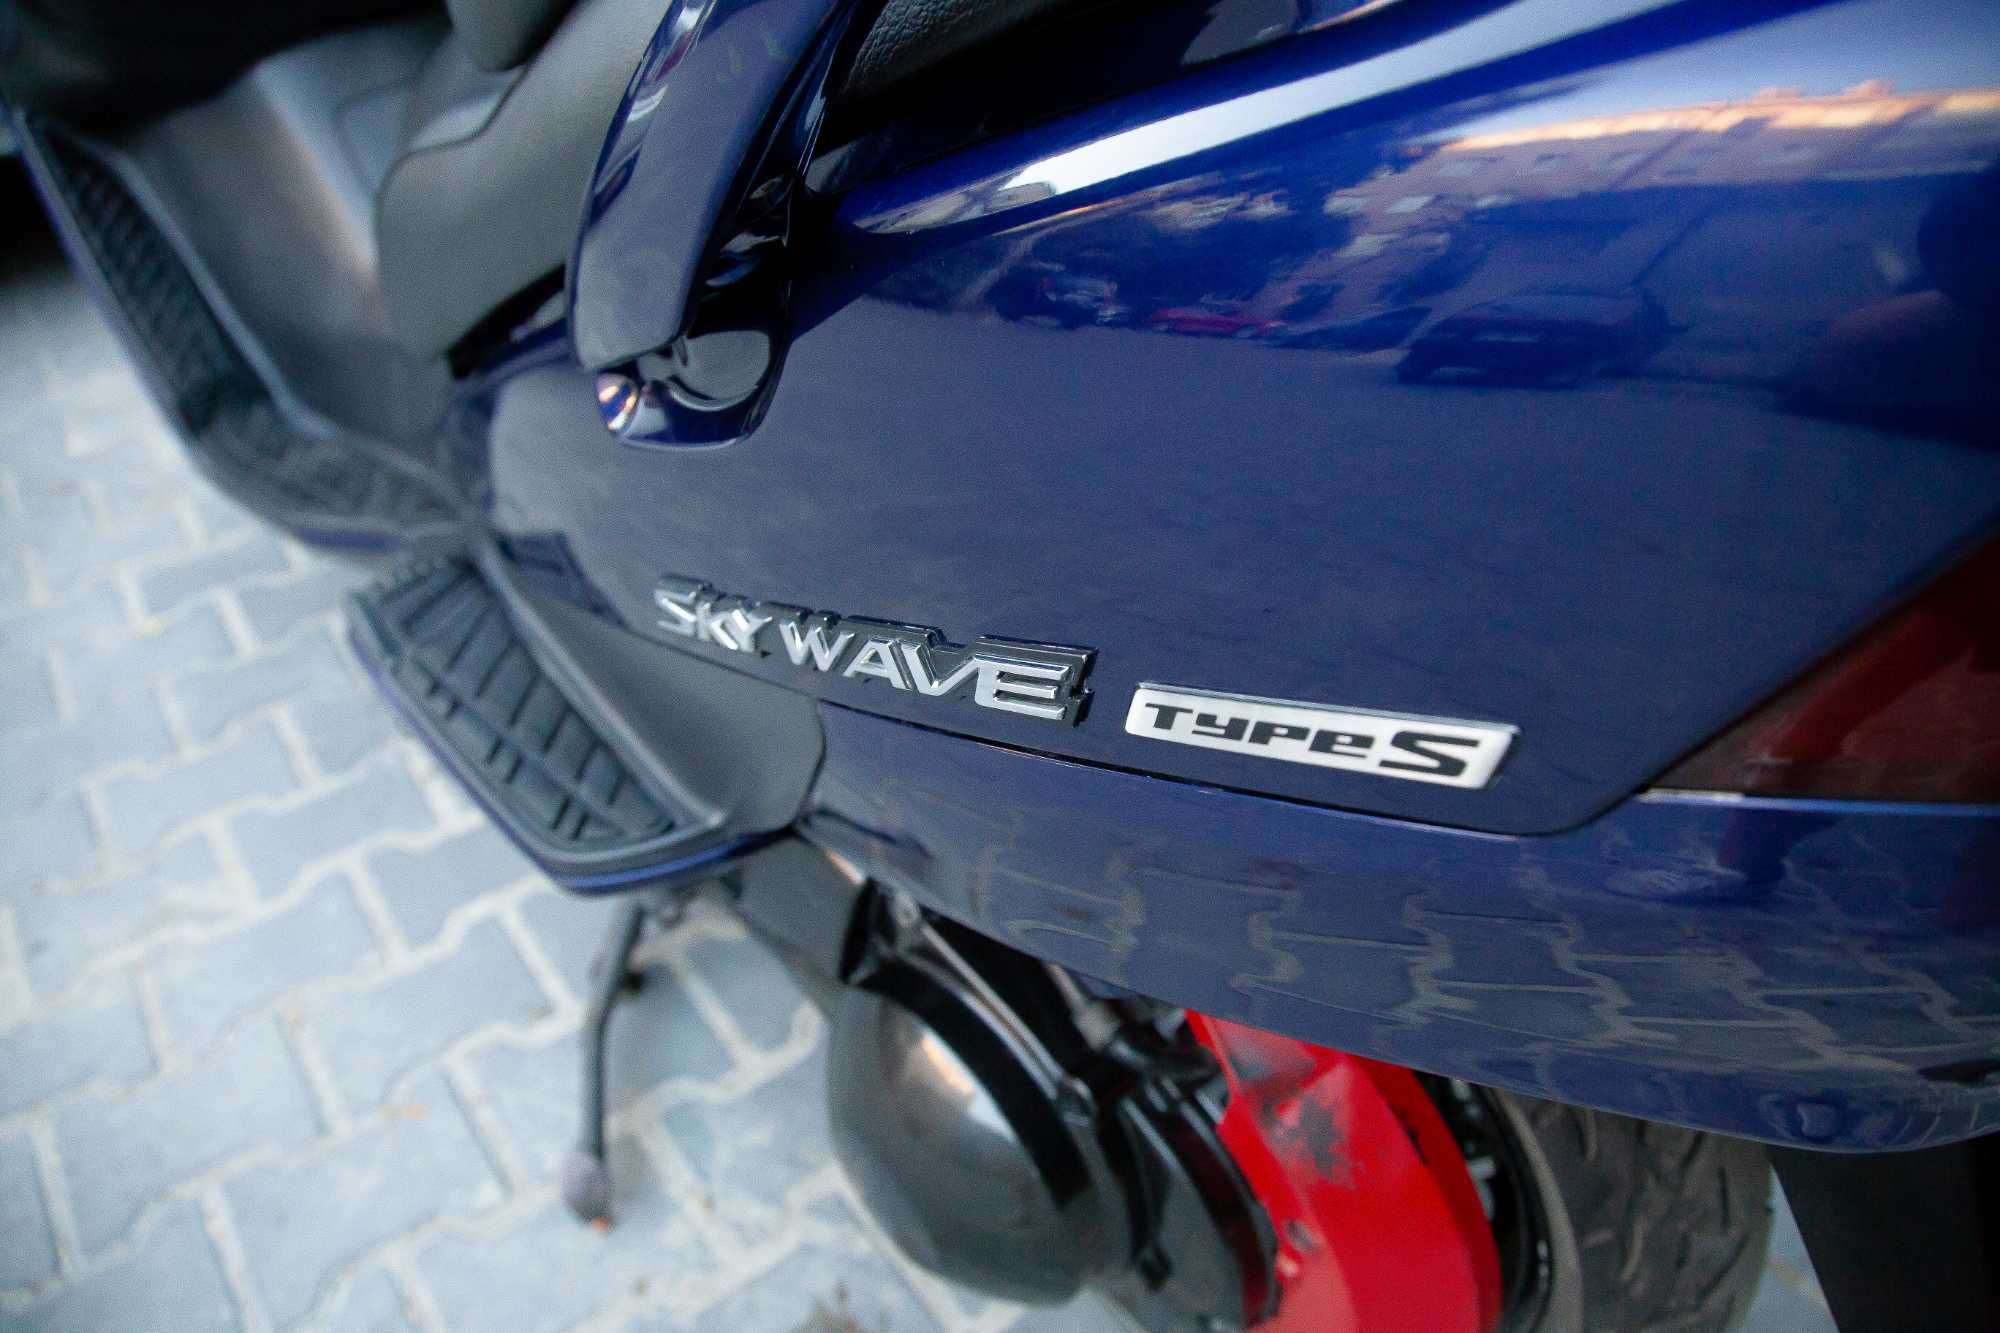 Suzuki sky wave 400